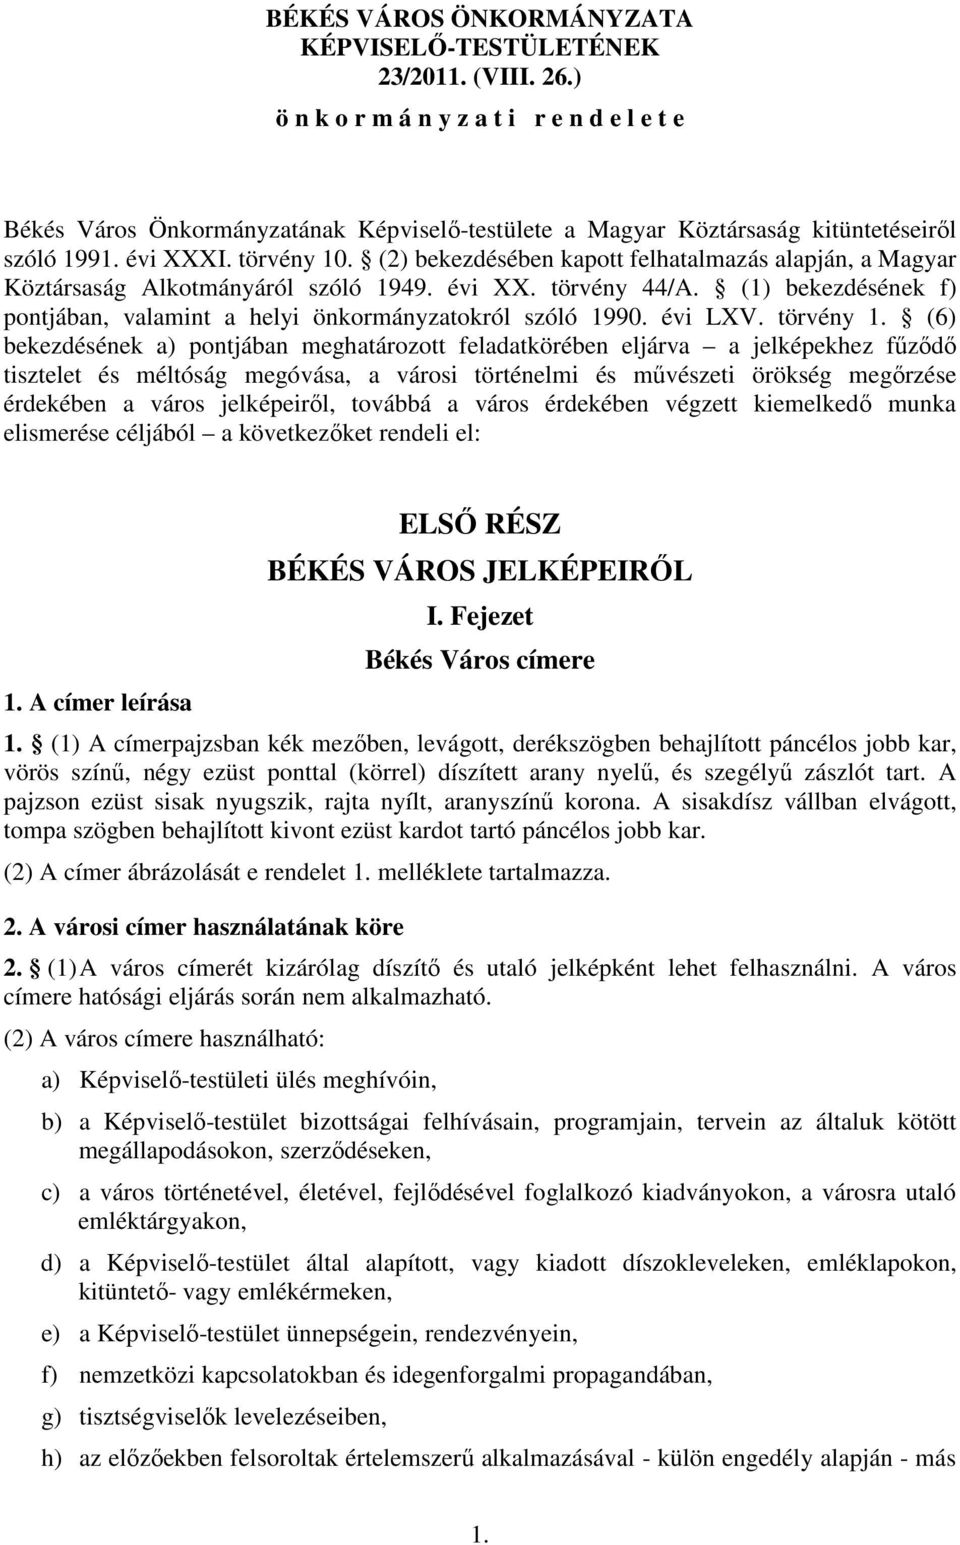 (2) bekezdésében kapott felhatalmazás alapján, a Magyar Köztársaság Alkotmányáról szóló 1949. évi XX. törvény 44/A. (1) bekezdésének f) pontjában, valamint a helyi önkormányzatokról szóló 1990.